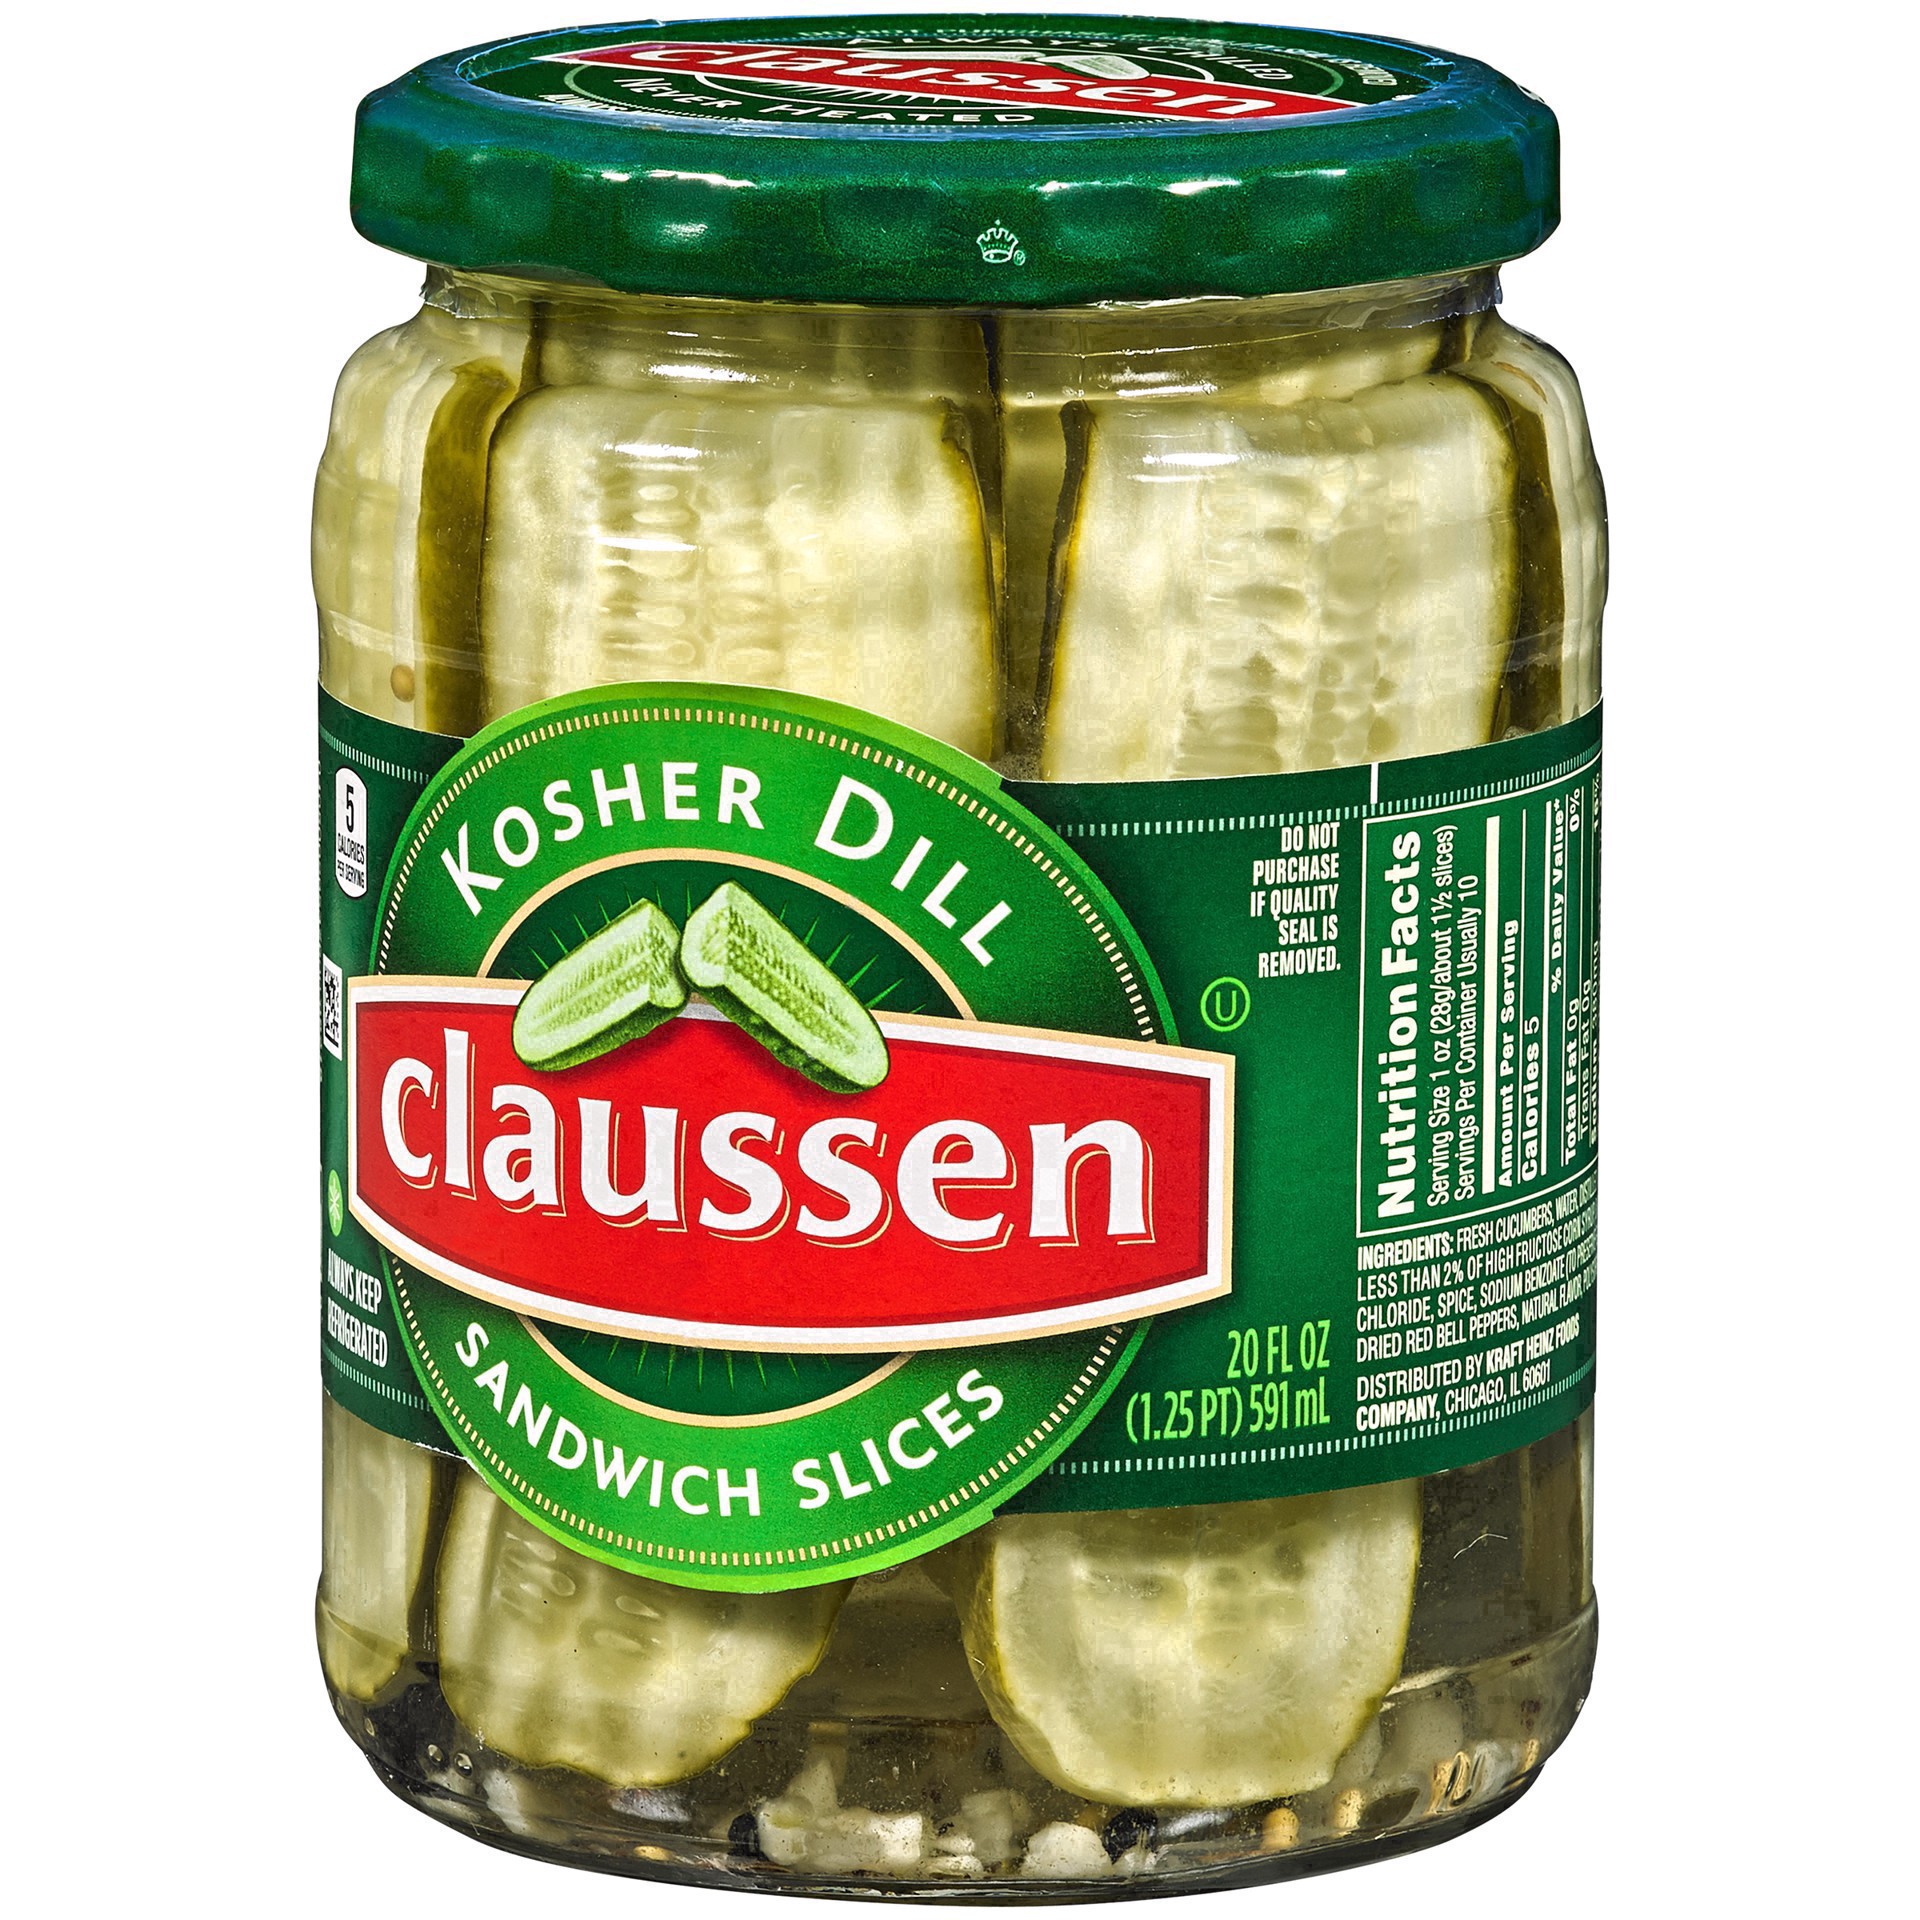 slide 6 of 144, Claussen Kosher Dill Pickle Sandwich Slices, 20 fl. oz. Jar, 20 fl oz